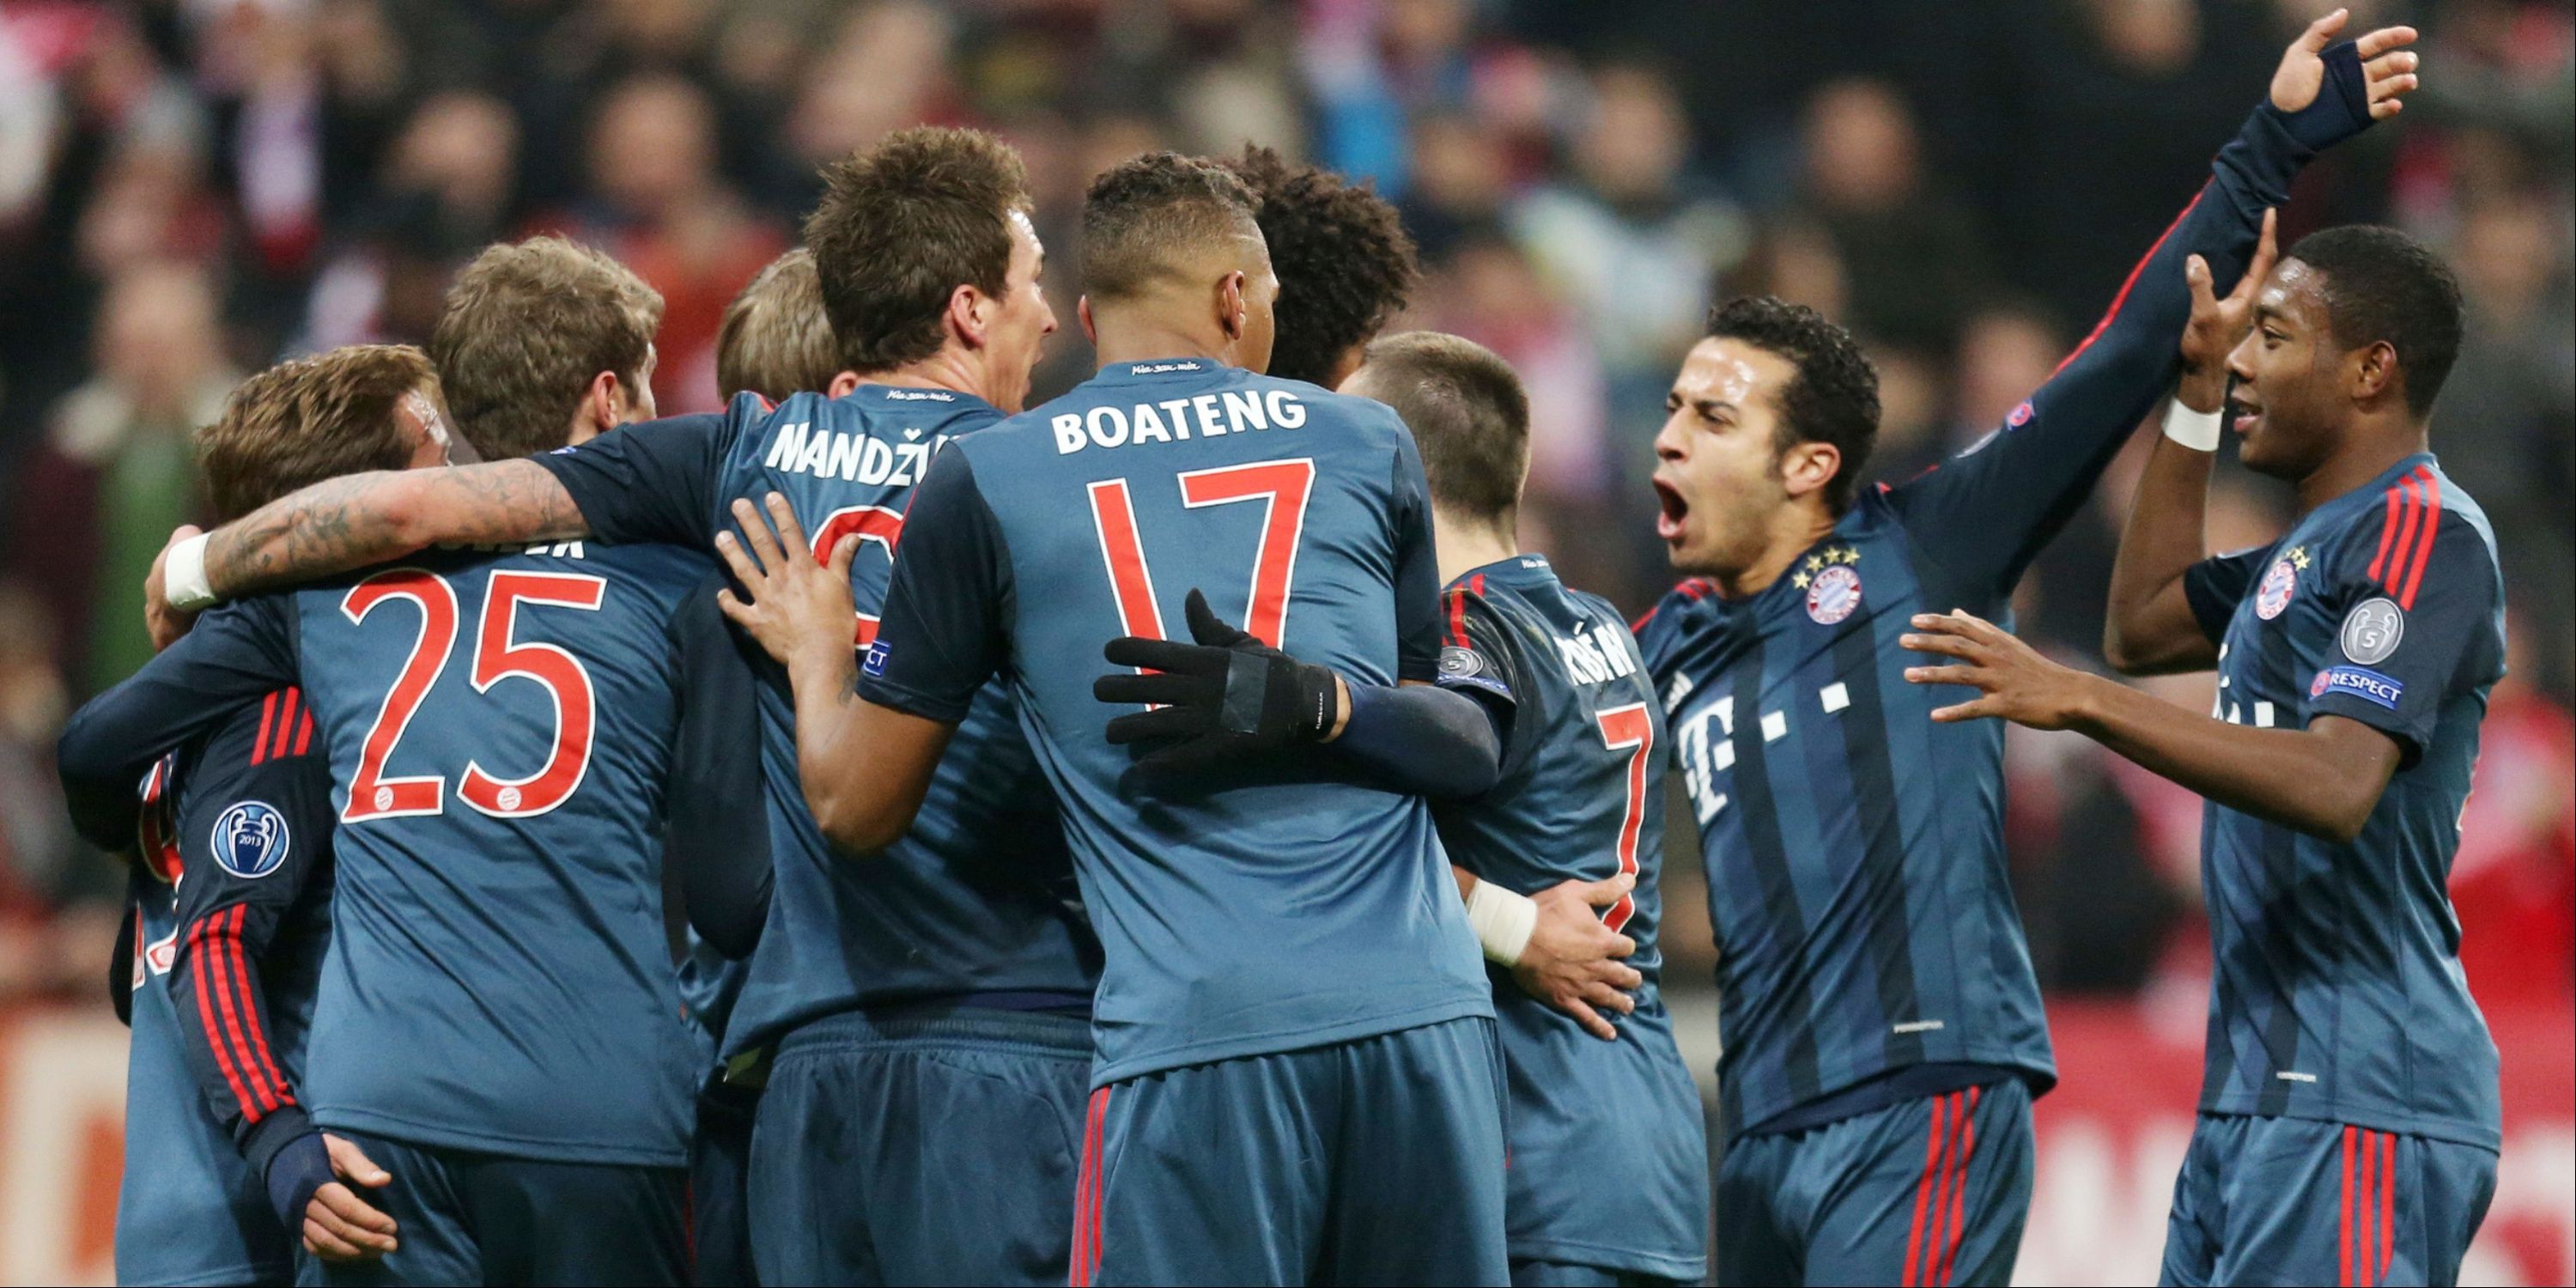 Bayern Munich players celebrating